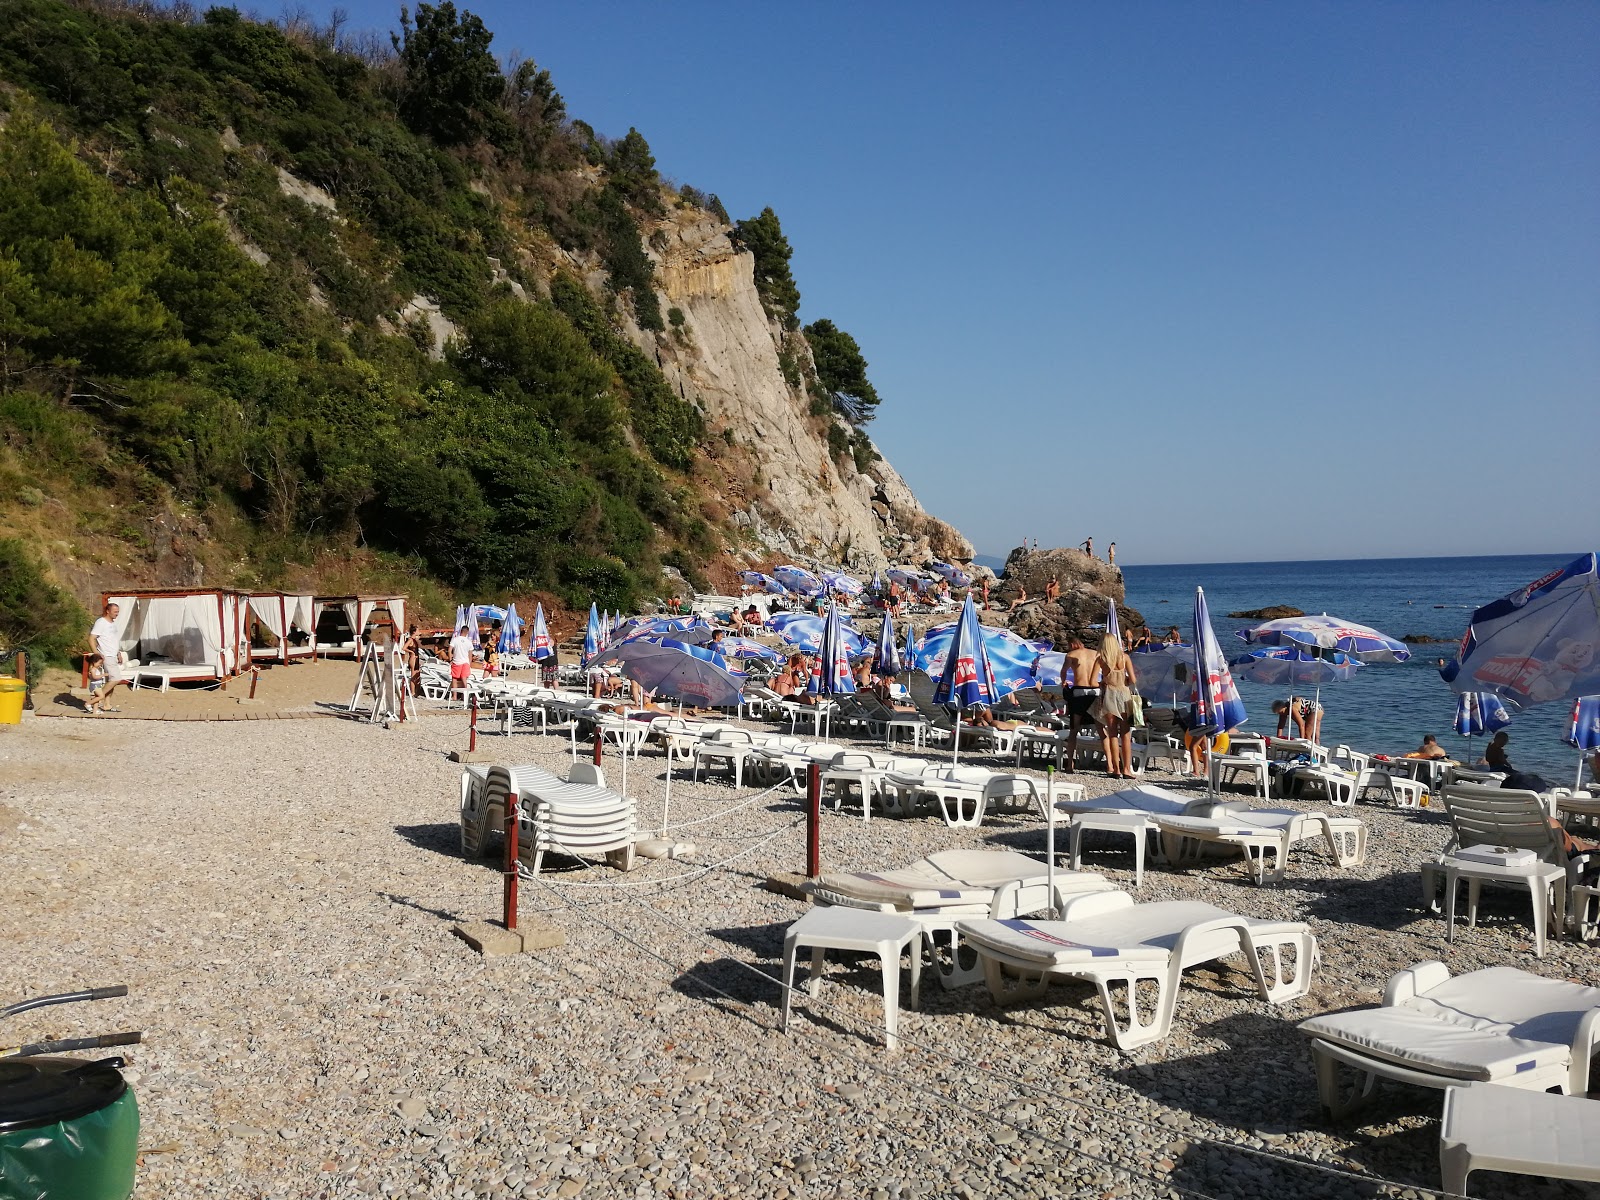 Plazha Milene Dravich'in fotoğrafı plaj tatil beldesi alanı